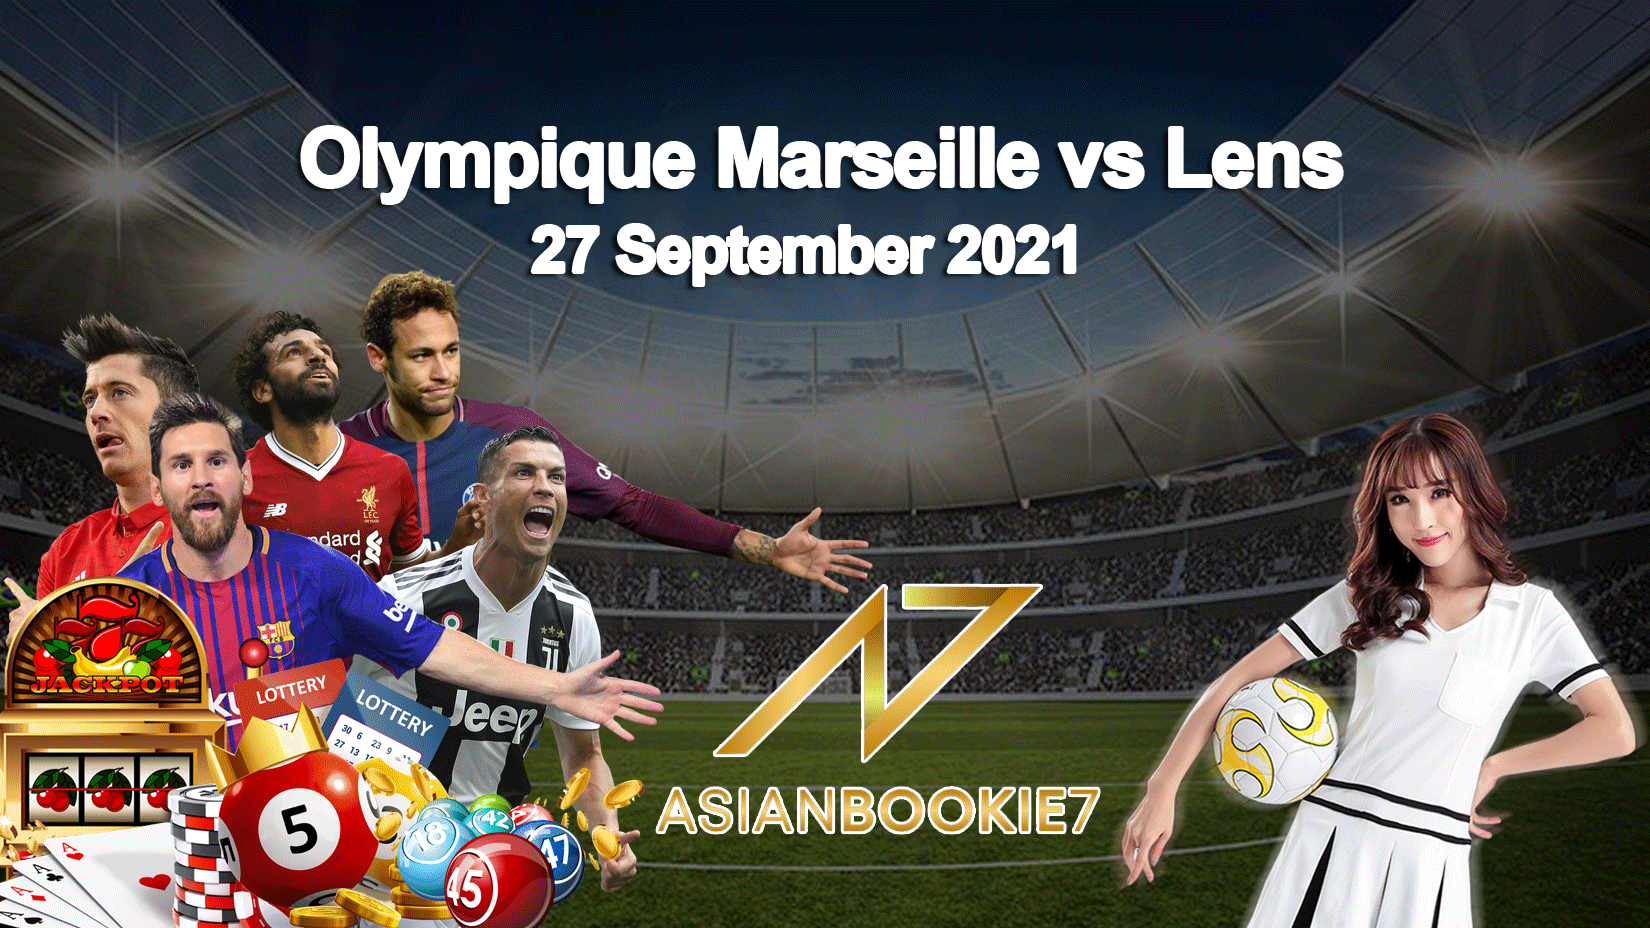 Prediksi-Olympique-Marseille-vs-Lens-27-September-2021